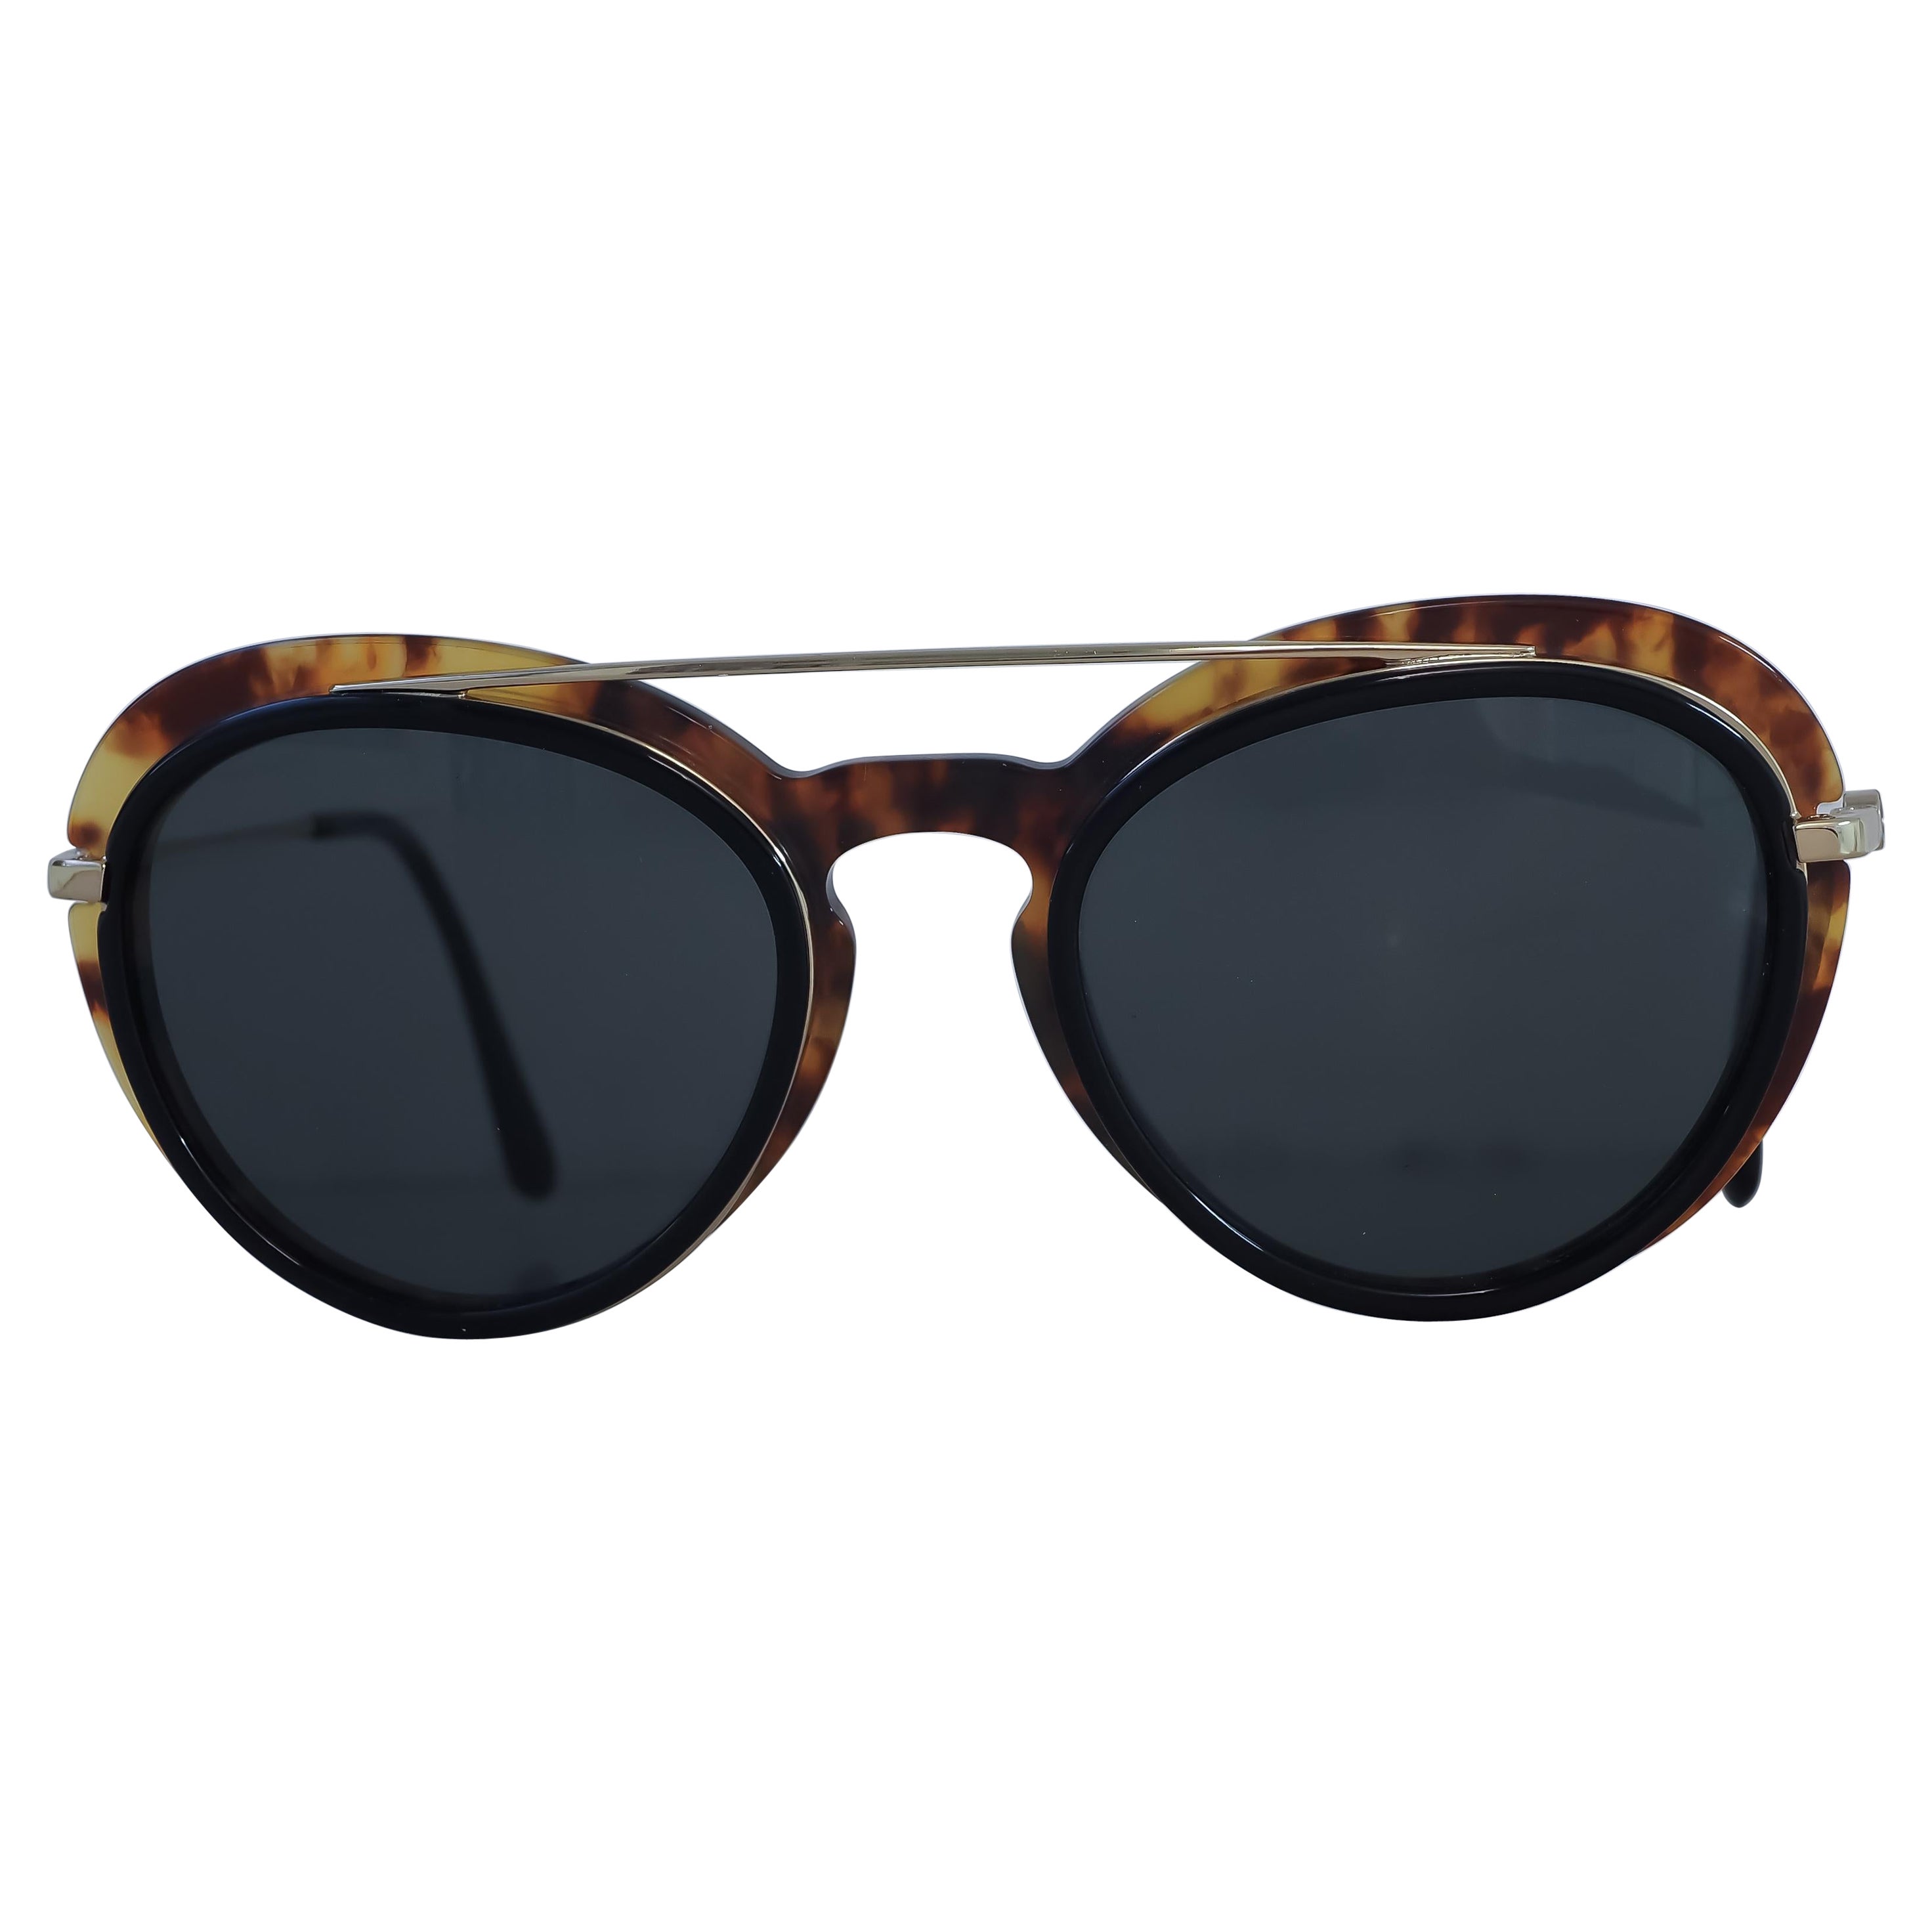 Armani tortoise sunglasses